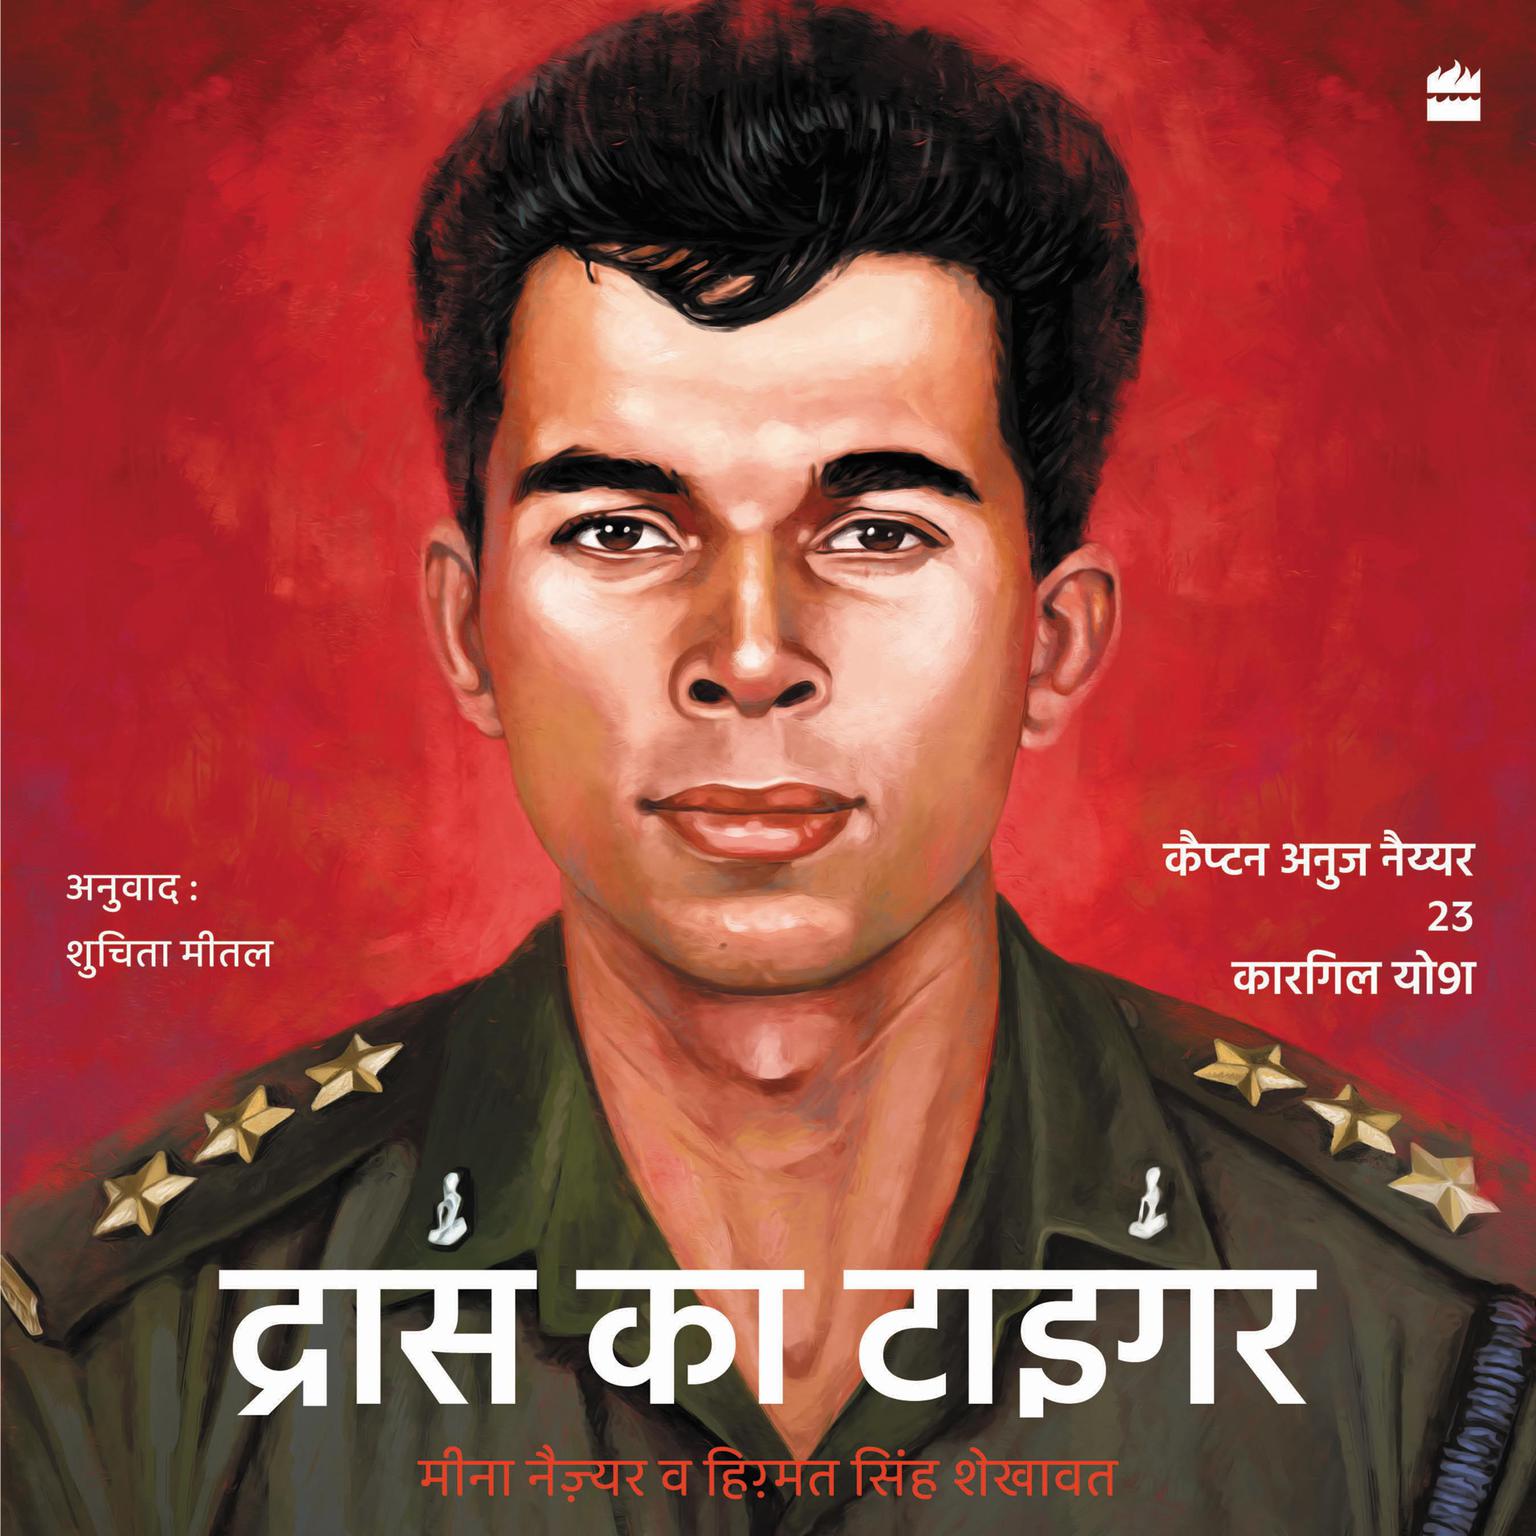 Drass ka Tiger: Capt. Anuj Nayyar, 23, Kargil Vir Audiobook, by Himmat Singh Shekhawat